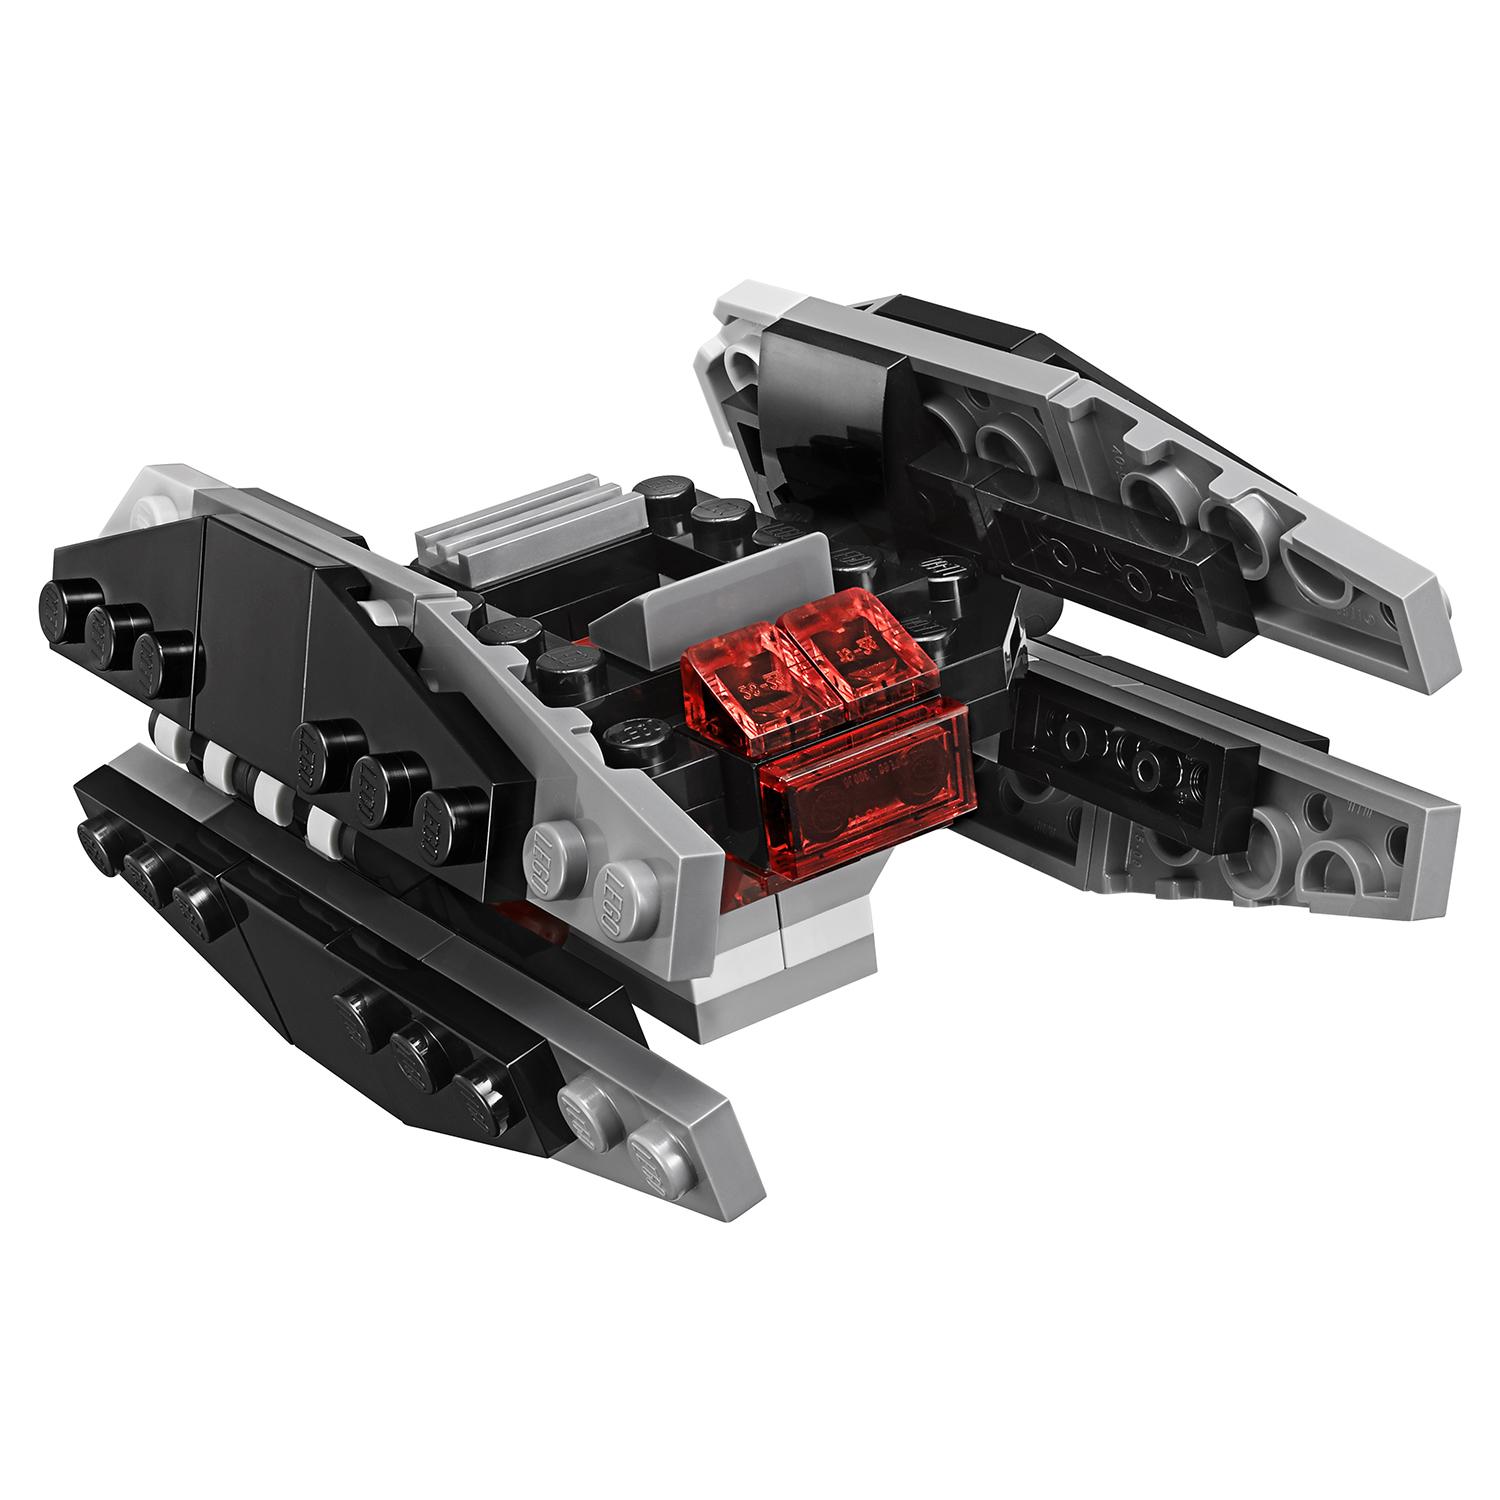 Lego Star Wars 75196 Истребитель типа A против бесшумного истребителя СИД